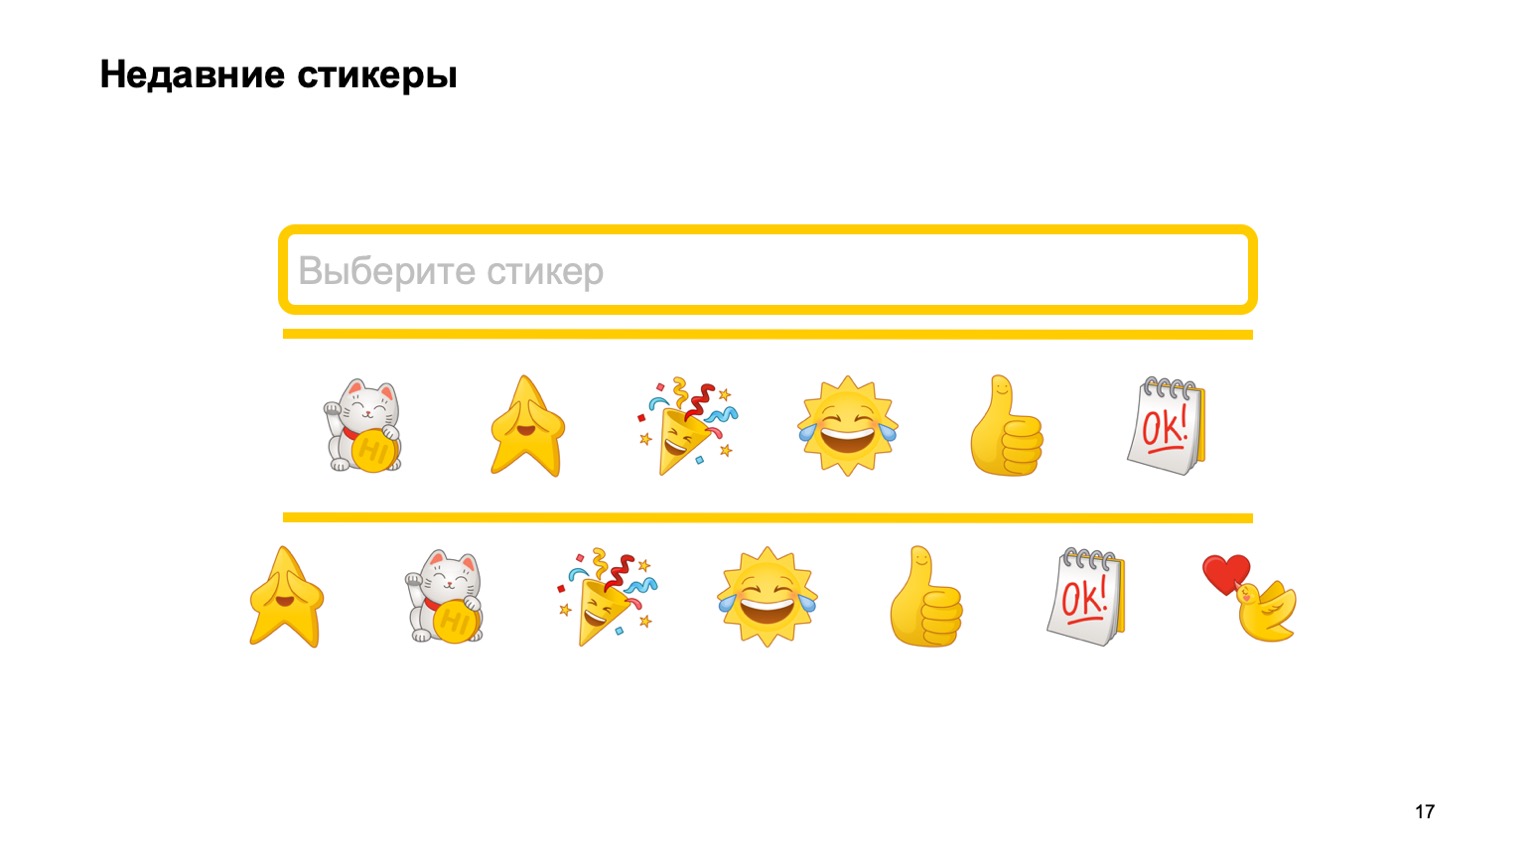 Мобильная разработка — это просто и скучно? Доклад Яндекса - 16